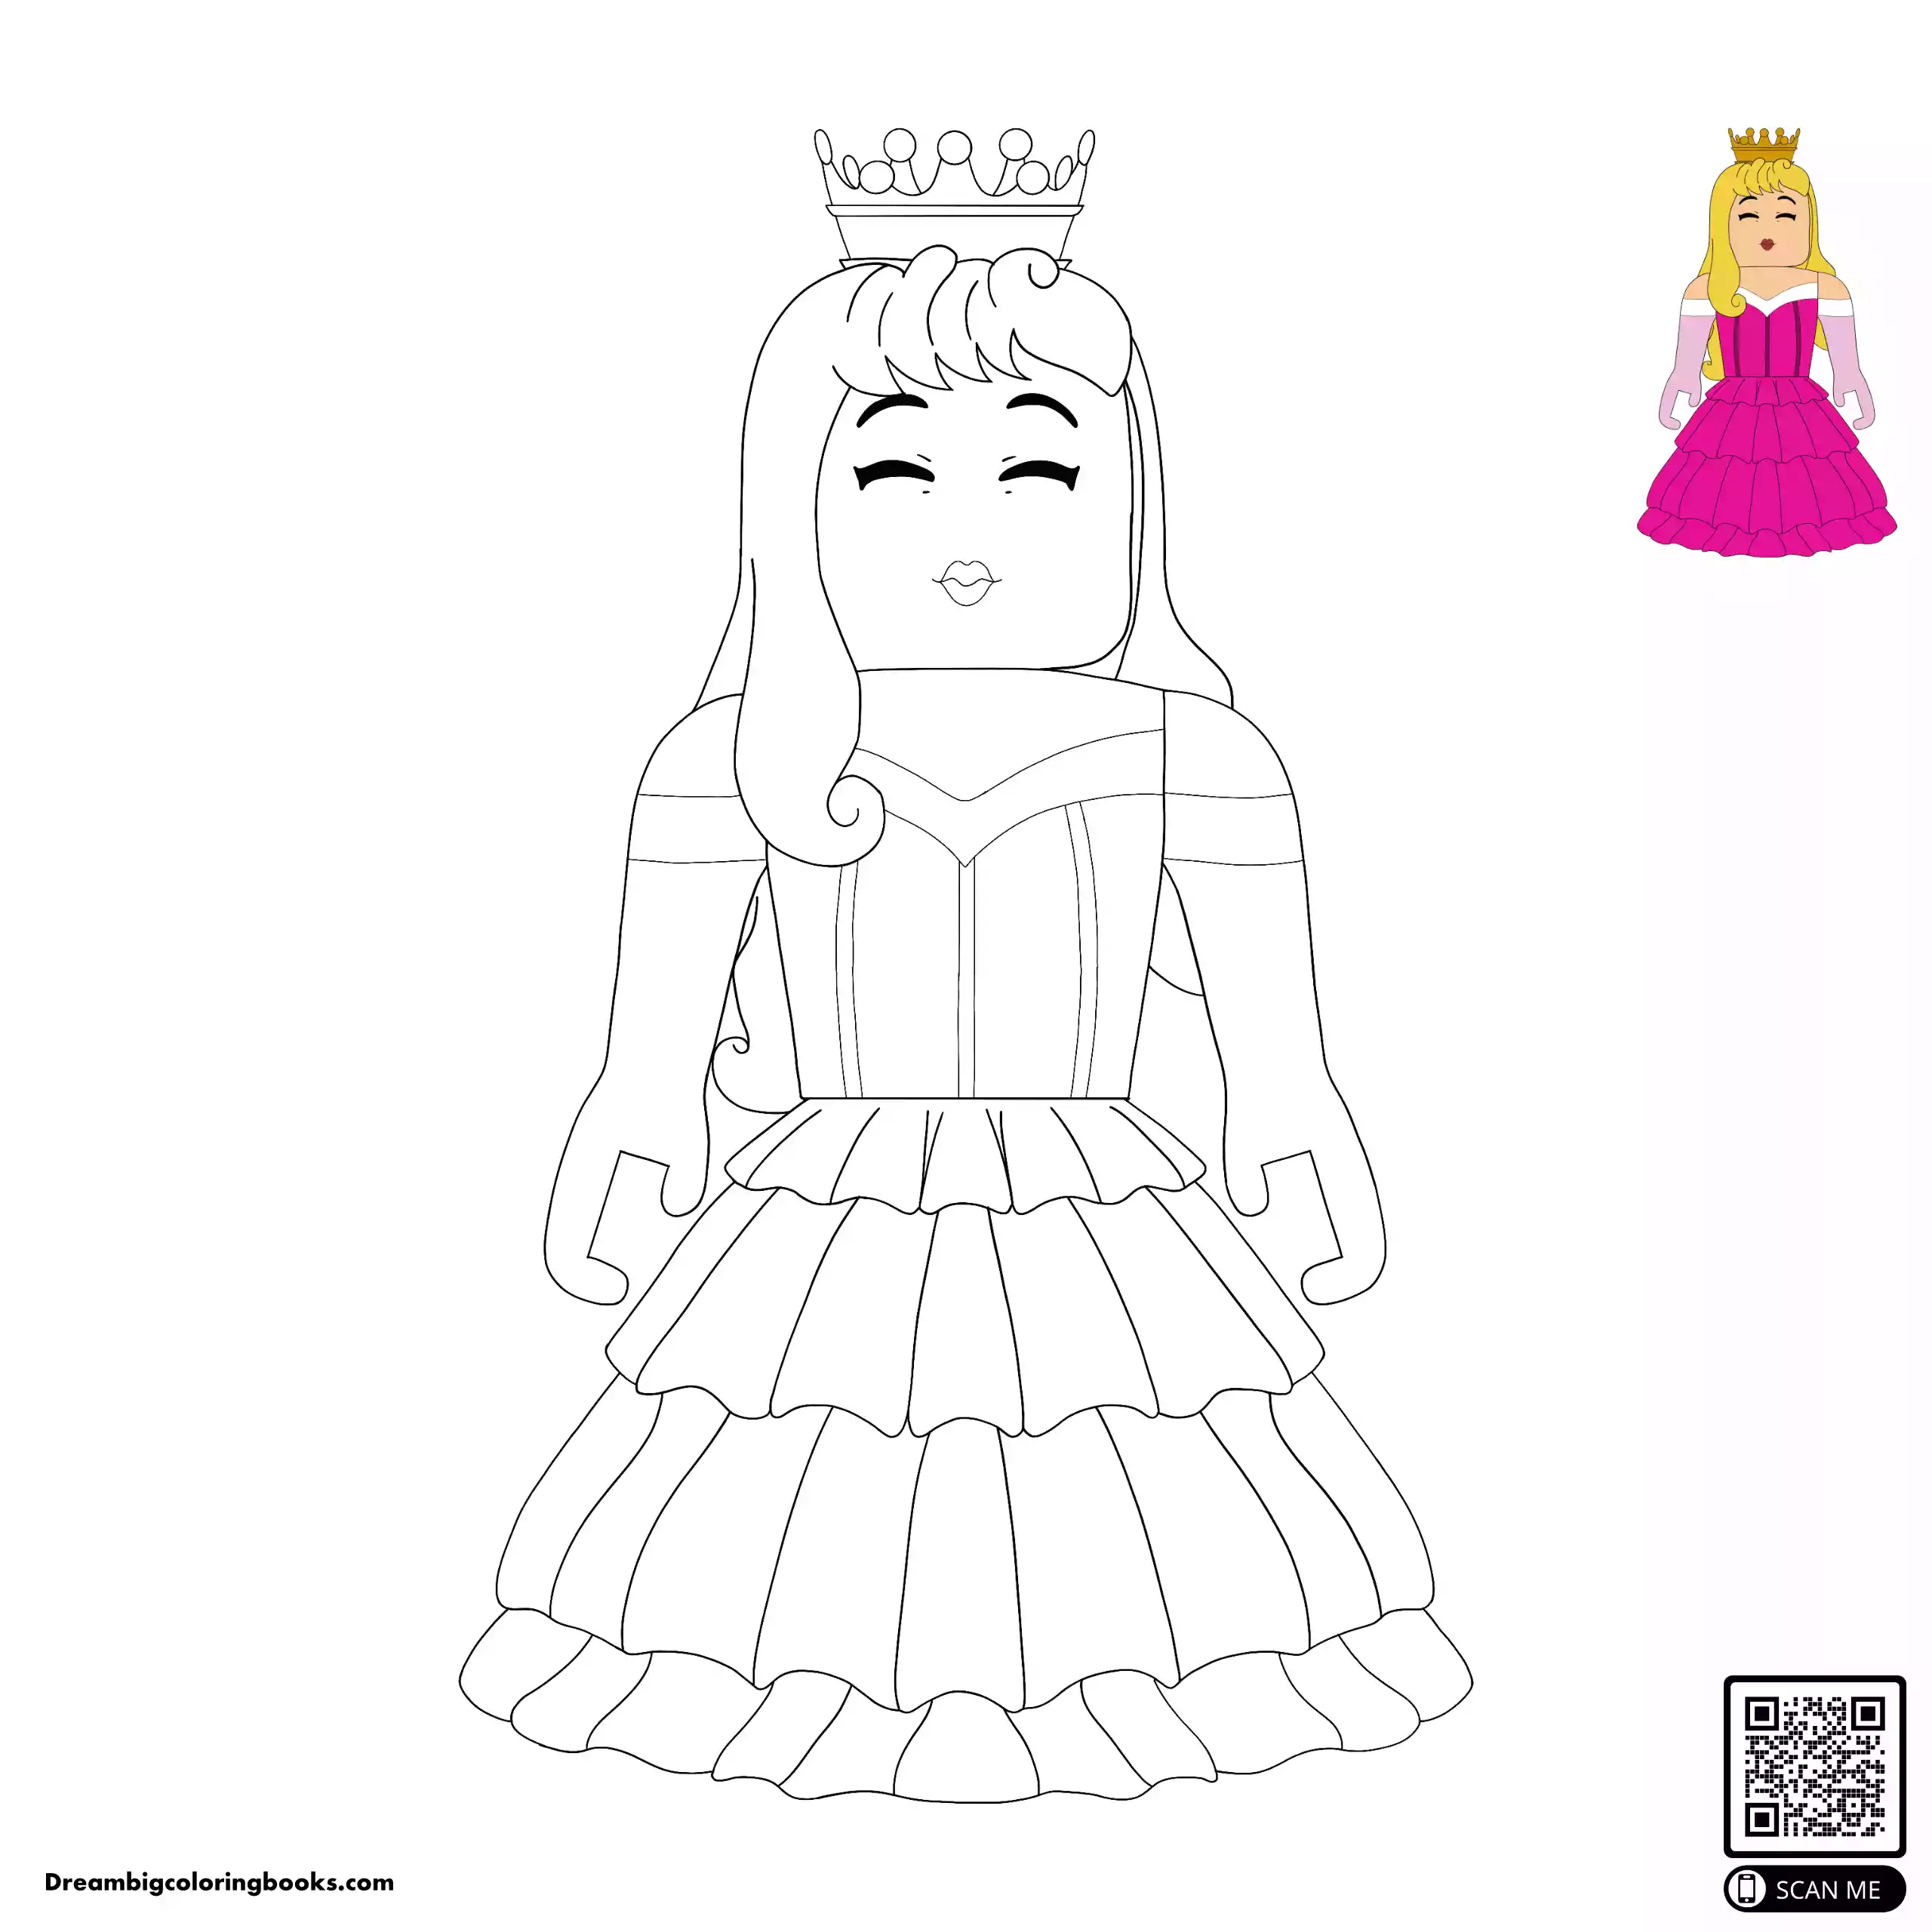 Roblox Princess coloring sheet